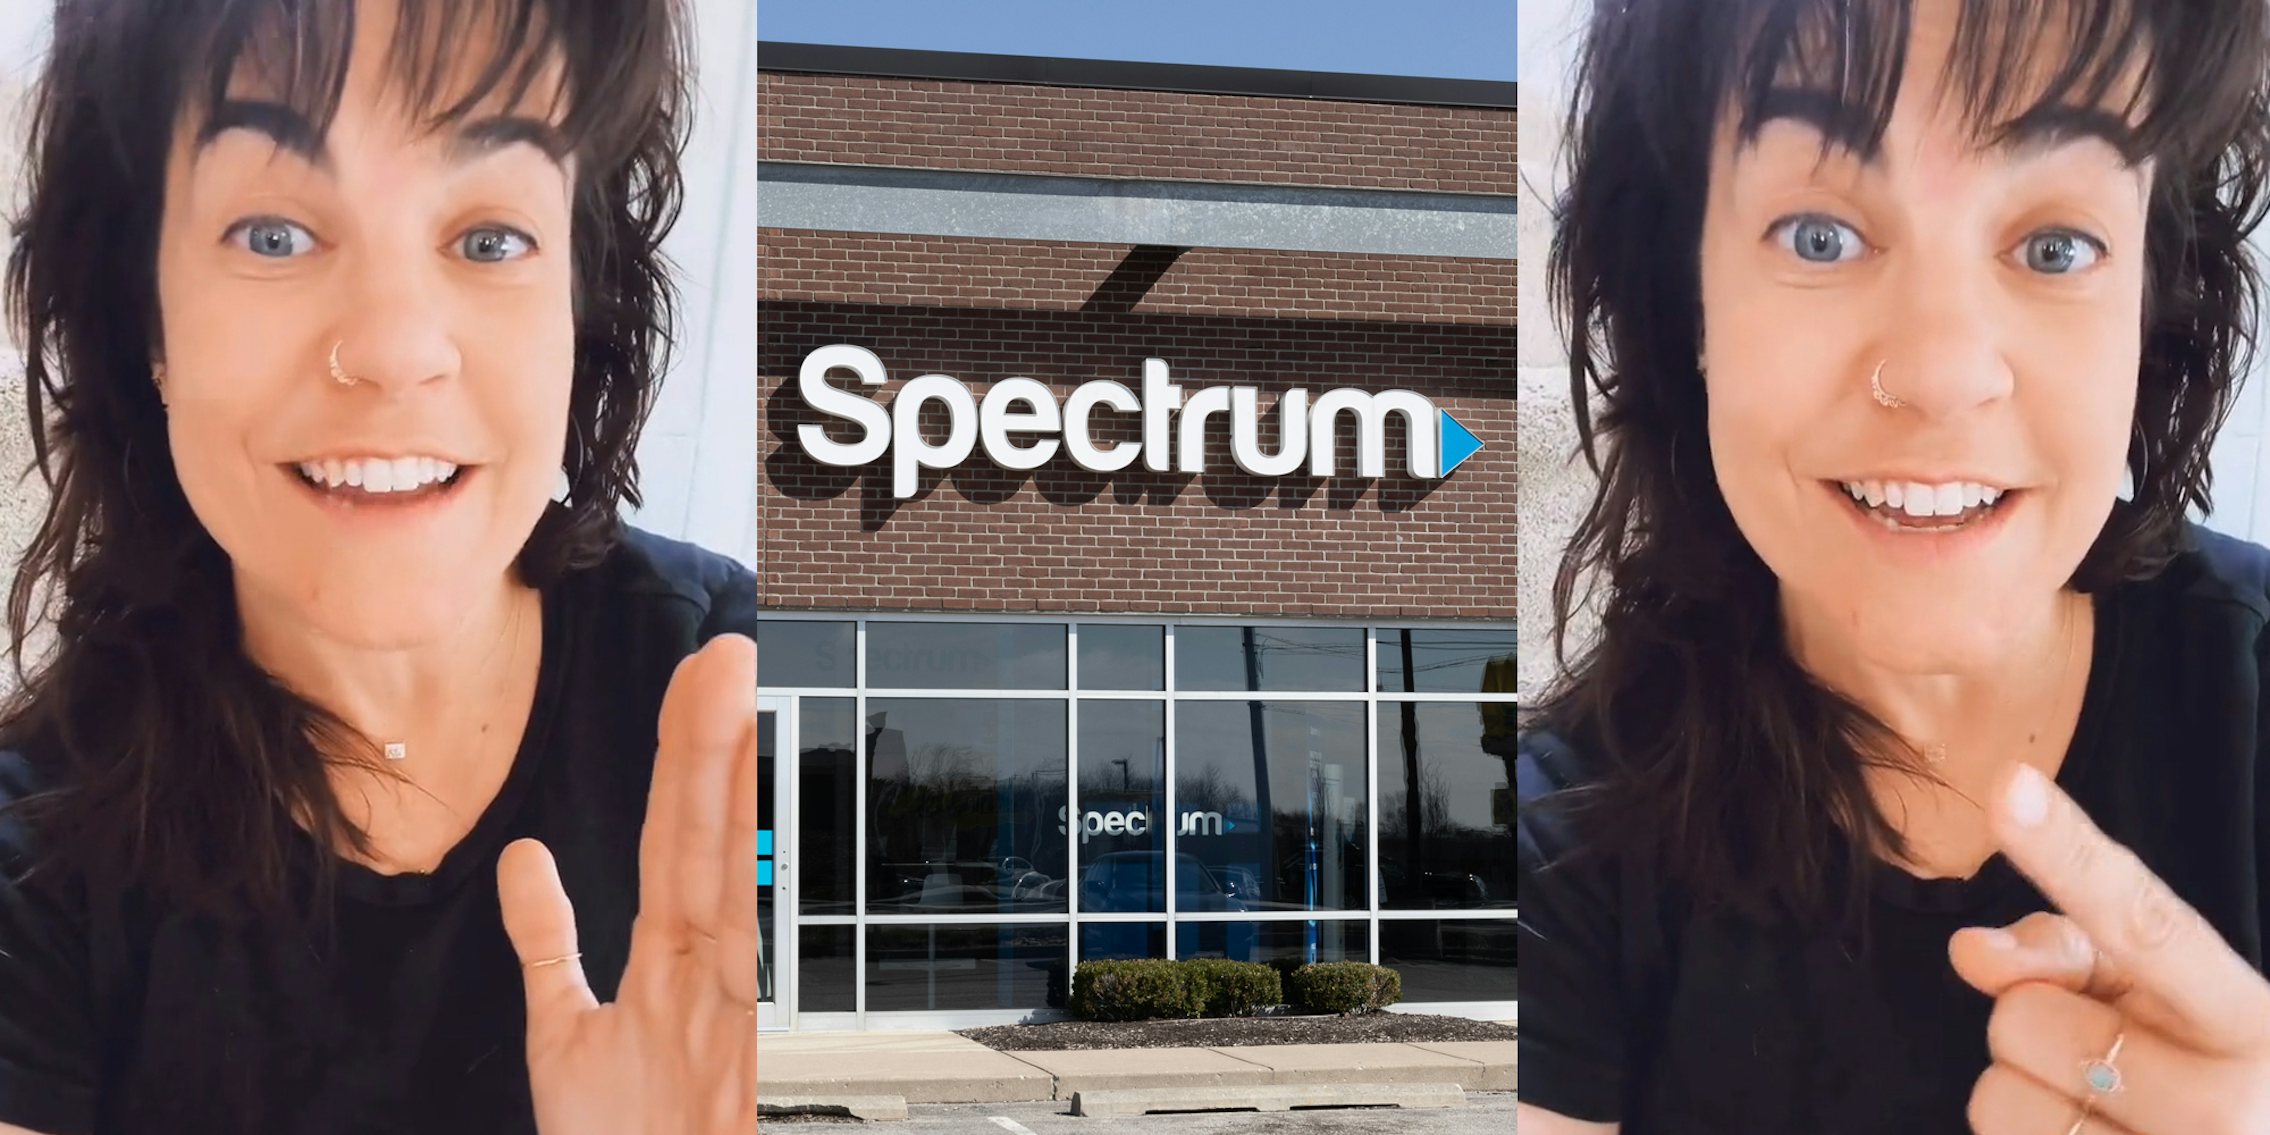 Spectrum customer speaking (l) Spectrum sign on building (c) Spectrum customer speaking pointing left (r)